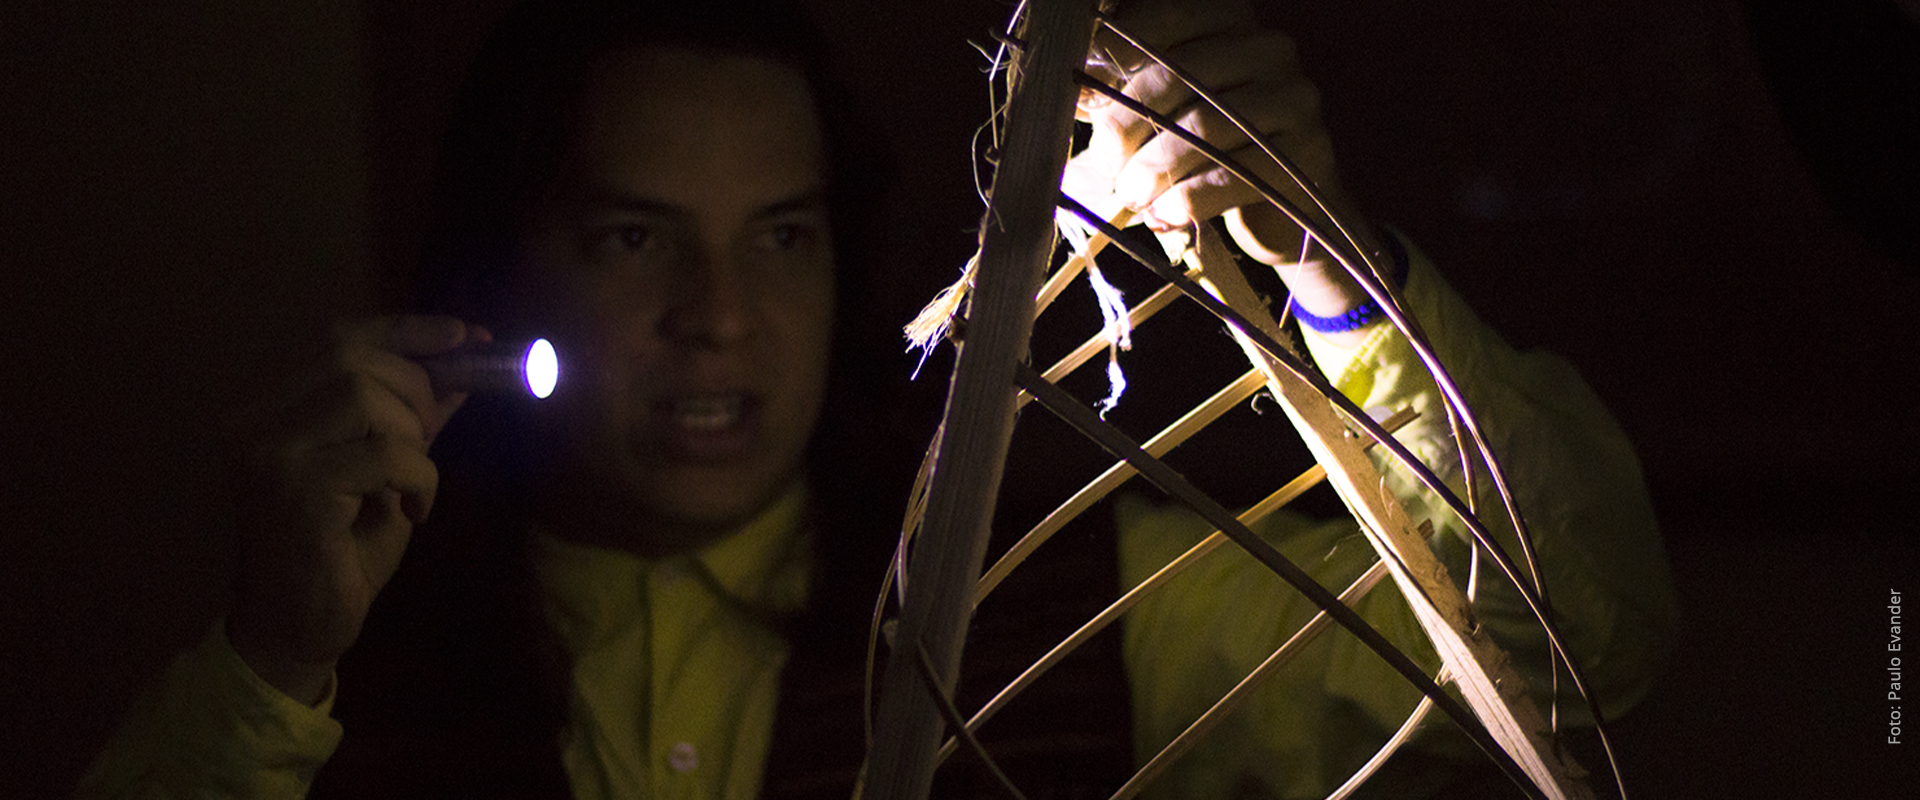 Fotografia da performance "731 são doze", um ator segura uma lanterna que ilumina objeto feito de miriti